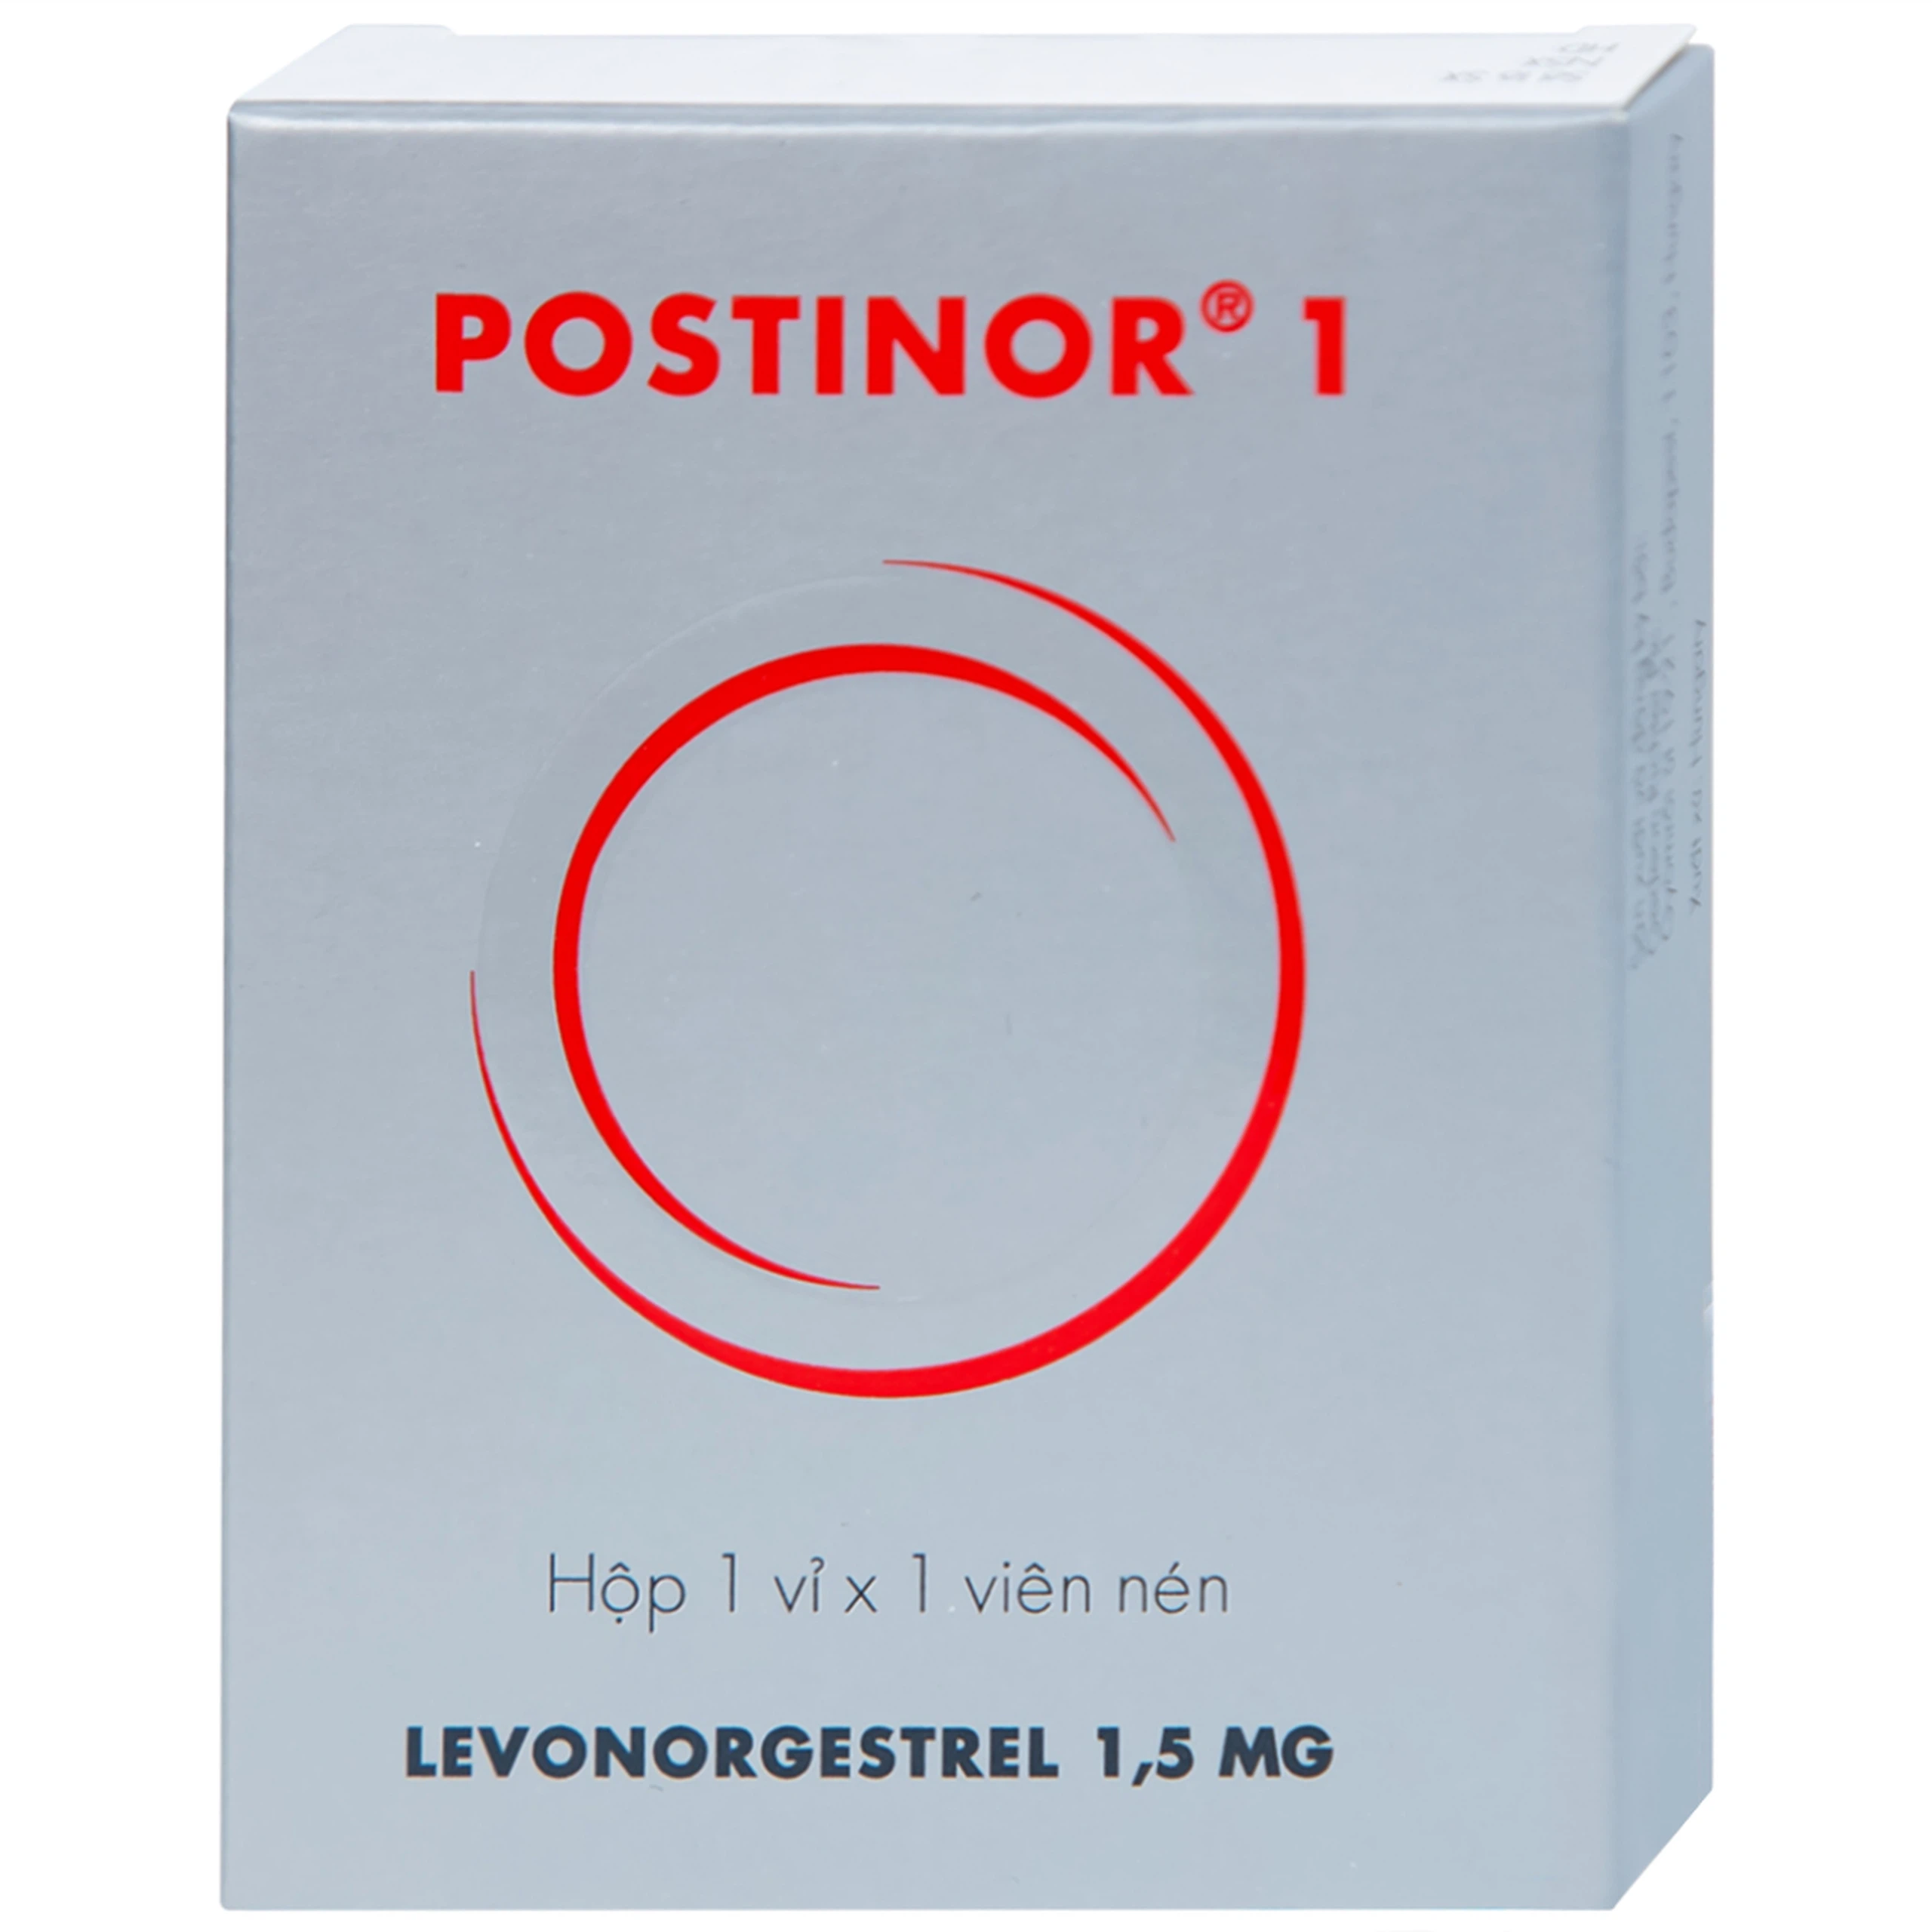 Thuốc Postinor 1 Gedeon dùng tránh thai khẩn cấp trong vòng 72 giờ sau giao hợp (1 viên)